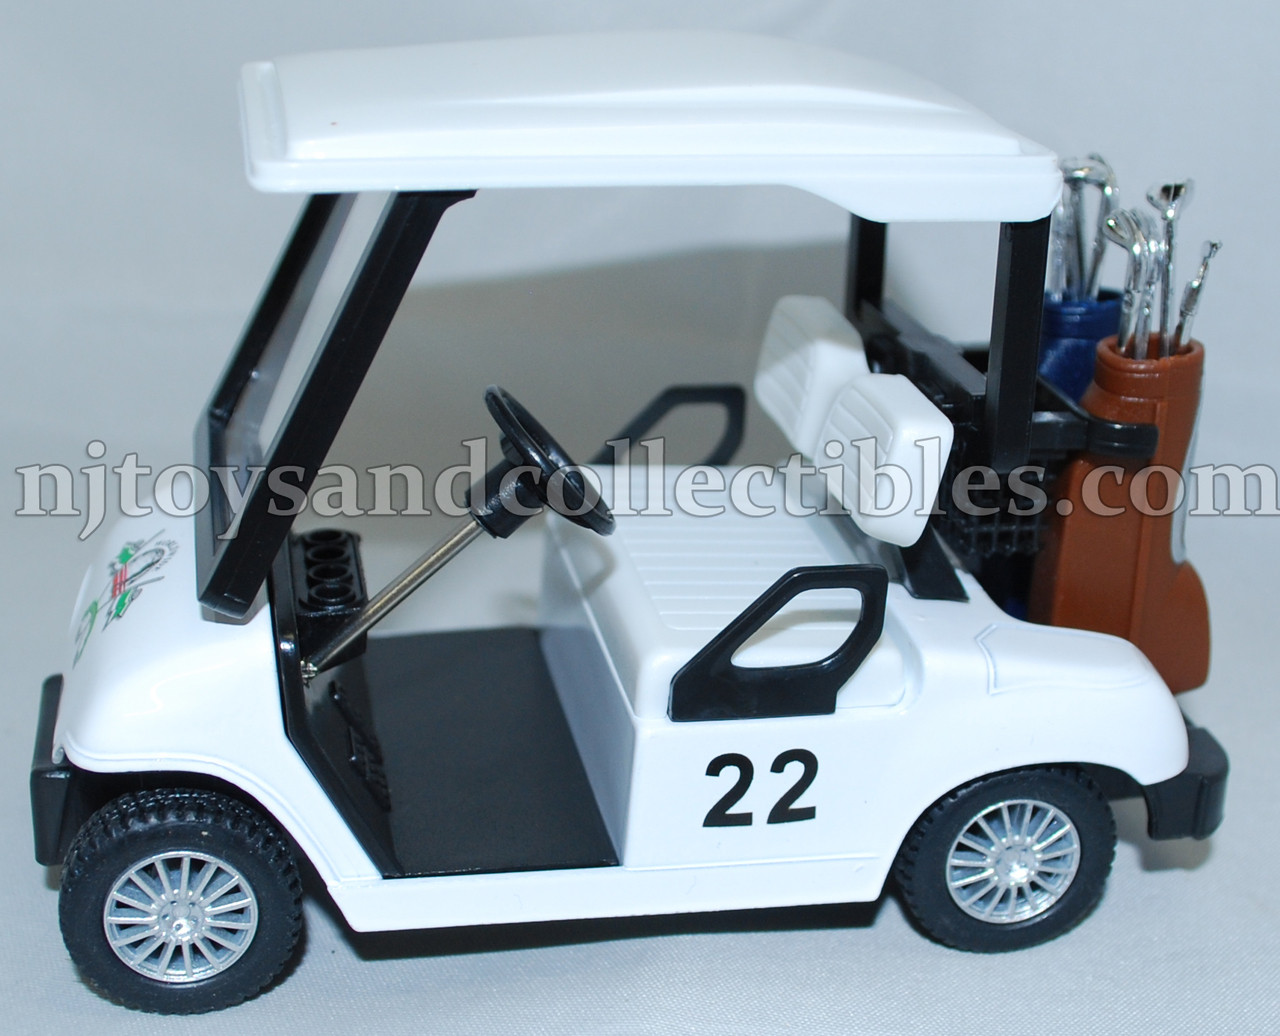 diecast golf cart